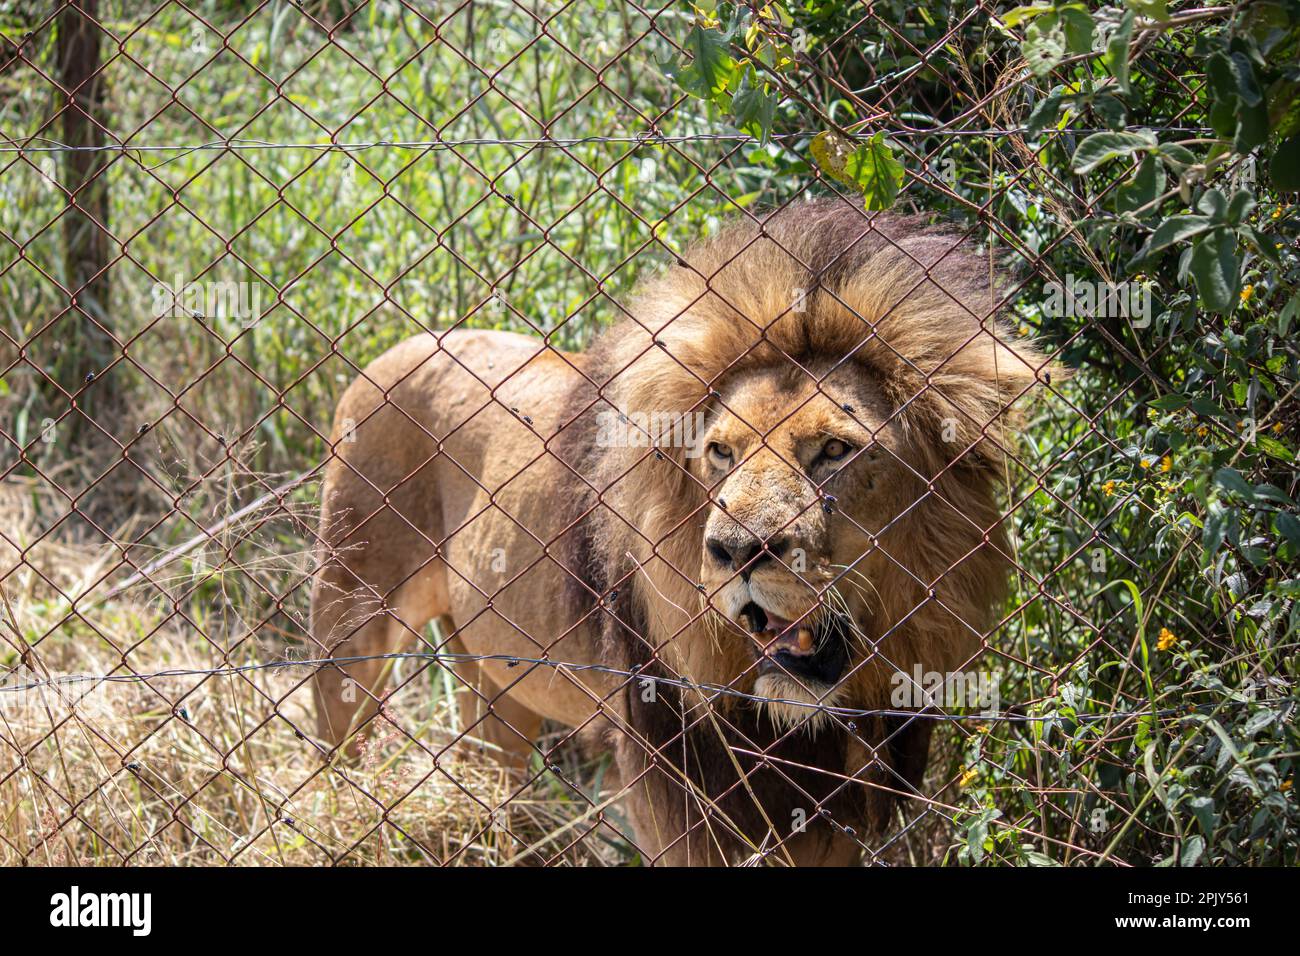 Lion puissant dans la savane dans la nature, mâle alpha dans le parc national de conservation d'Imire, Zimbabwe Banque D'Images